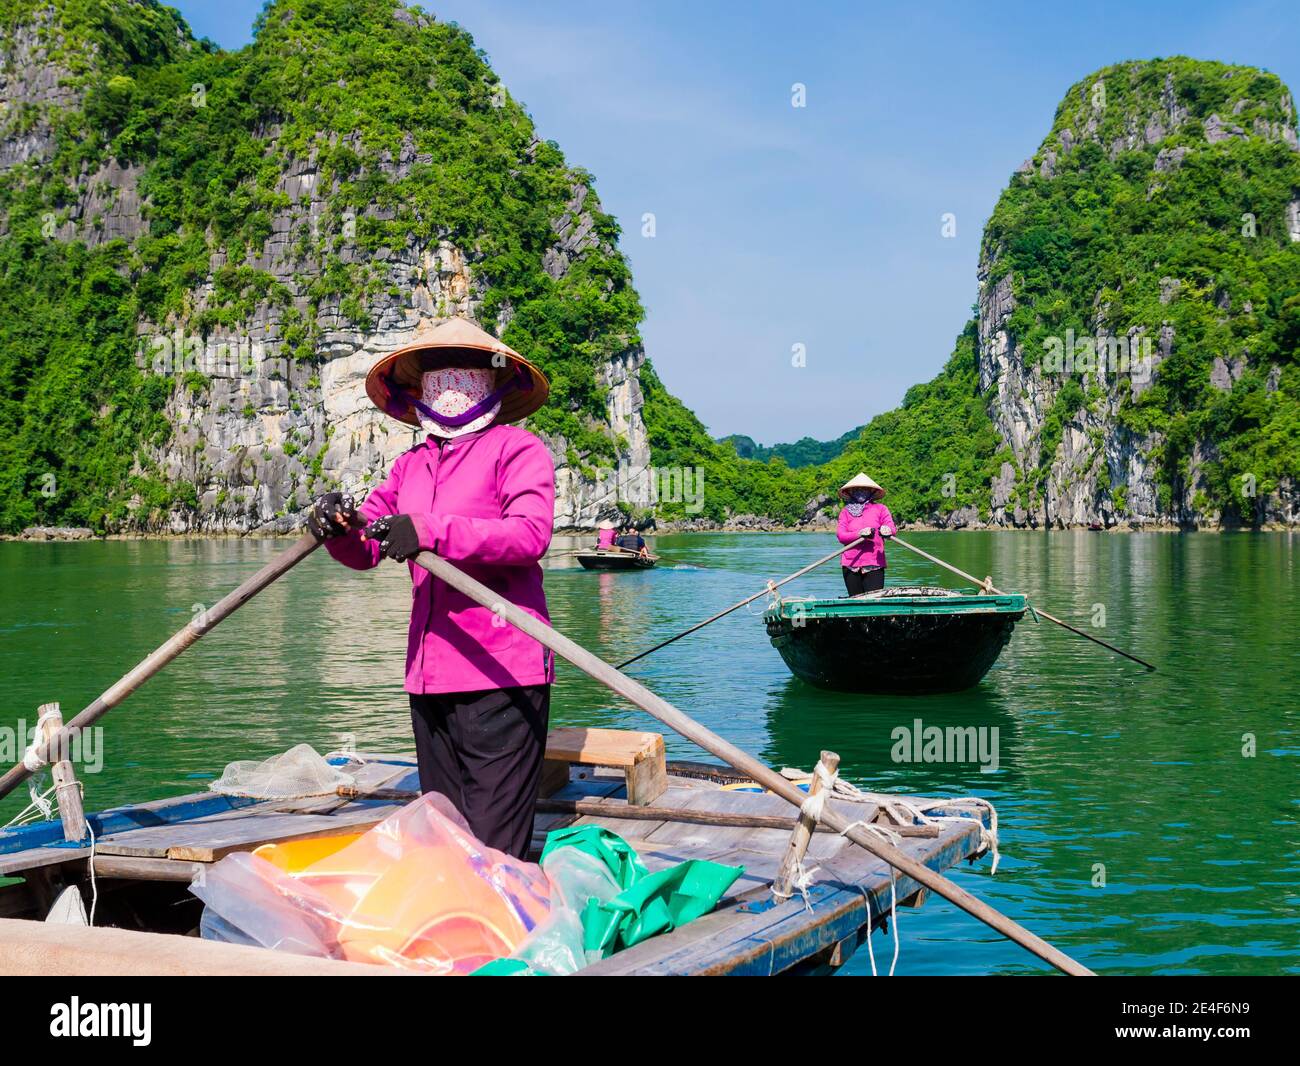 Le guide locali in tipiche uniformi viola e cappelli conici portano i turisti in una gita in barca attraverso le maestose montagne calcaree della baia di ha along, in Vietnam Foto Stock